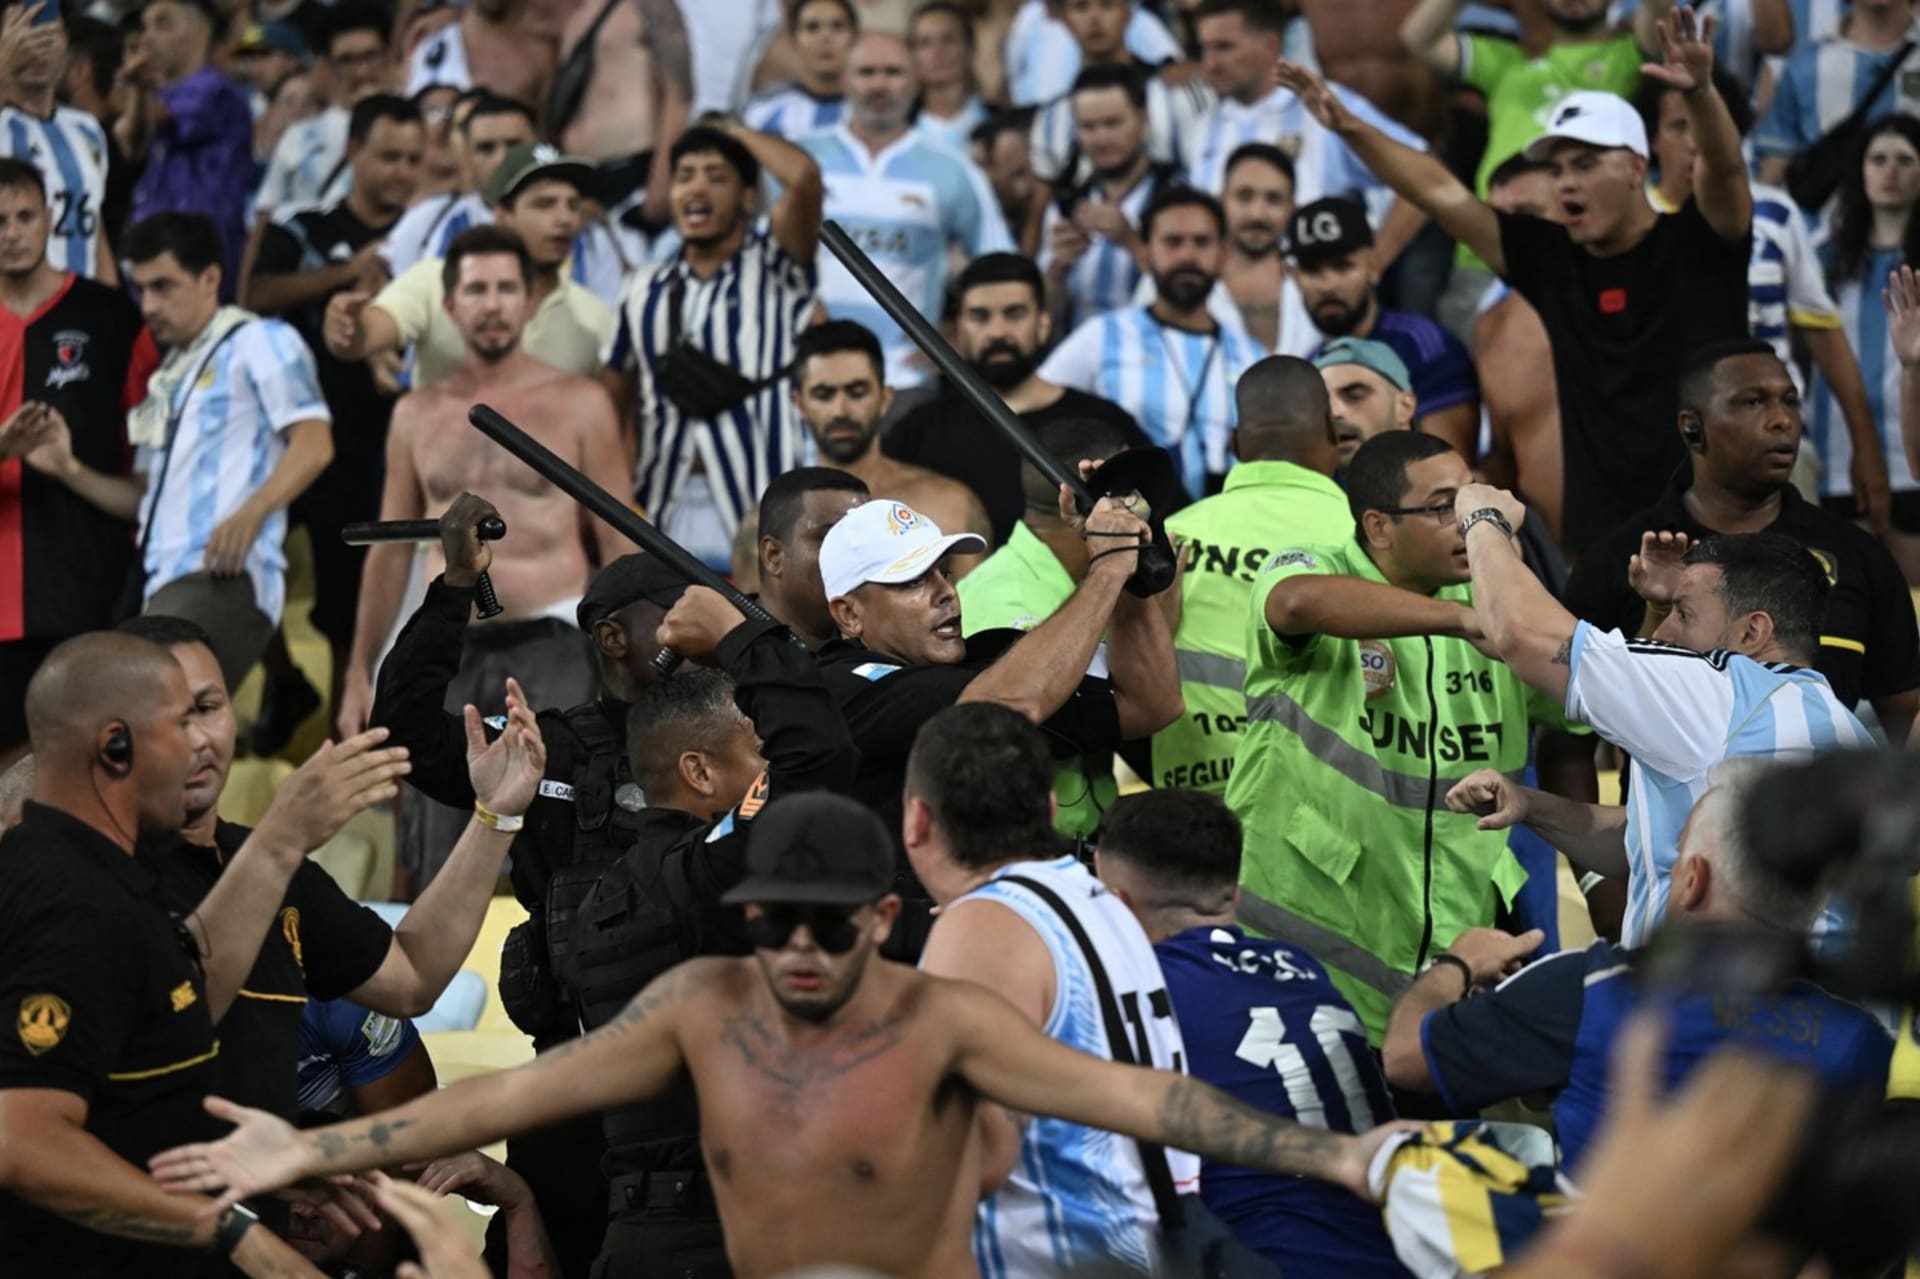 Bitka fanoušků na zápase Brazílie s Argentinou. Policie vytáhla obušky.